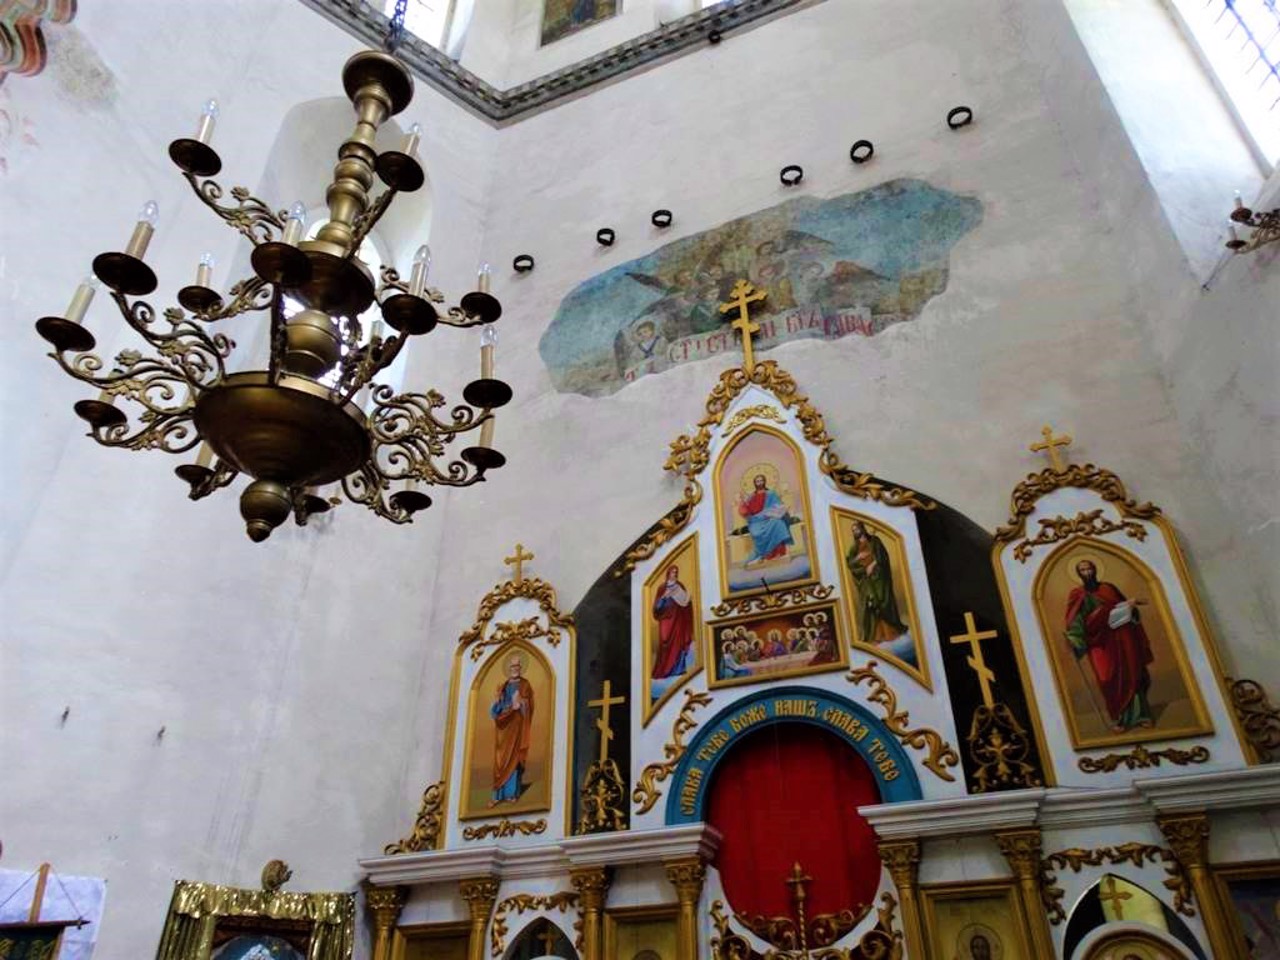 Воскресенська церква, Седнів